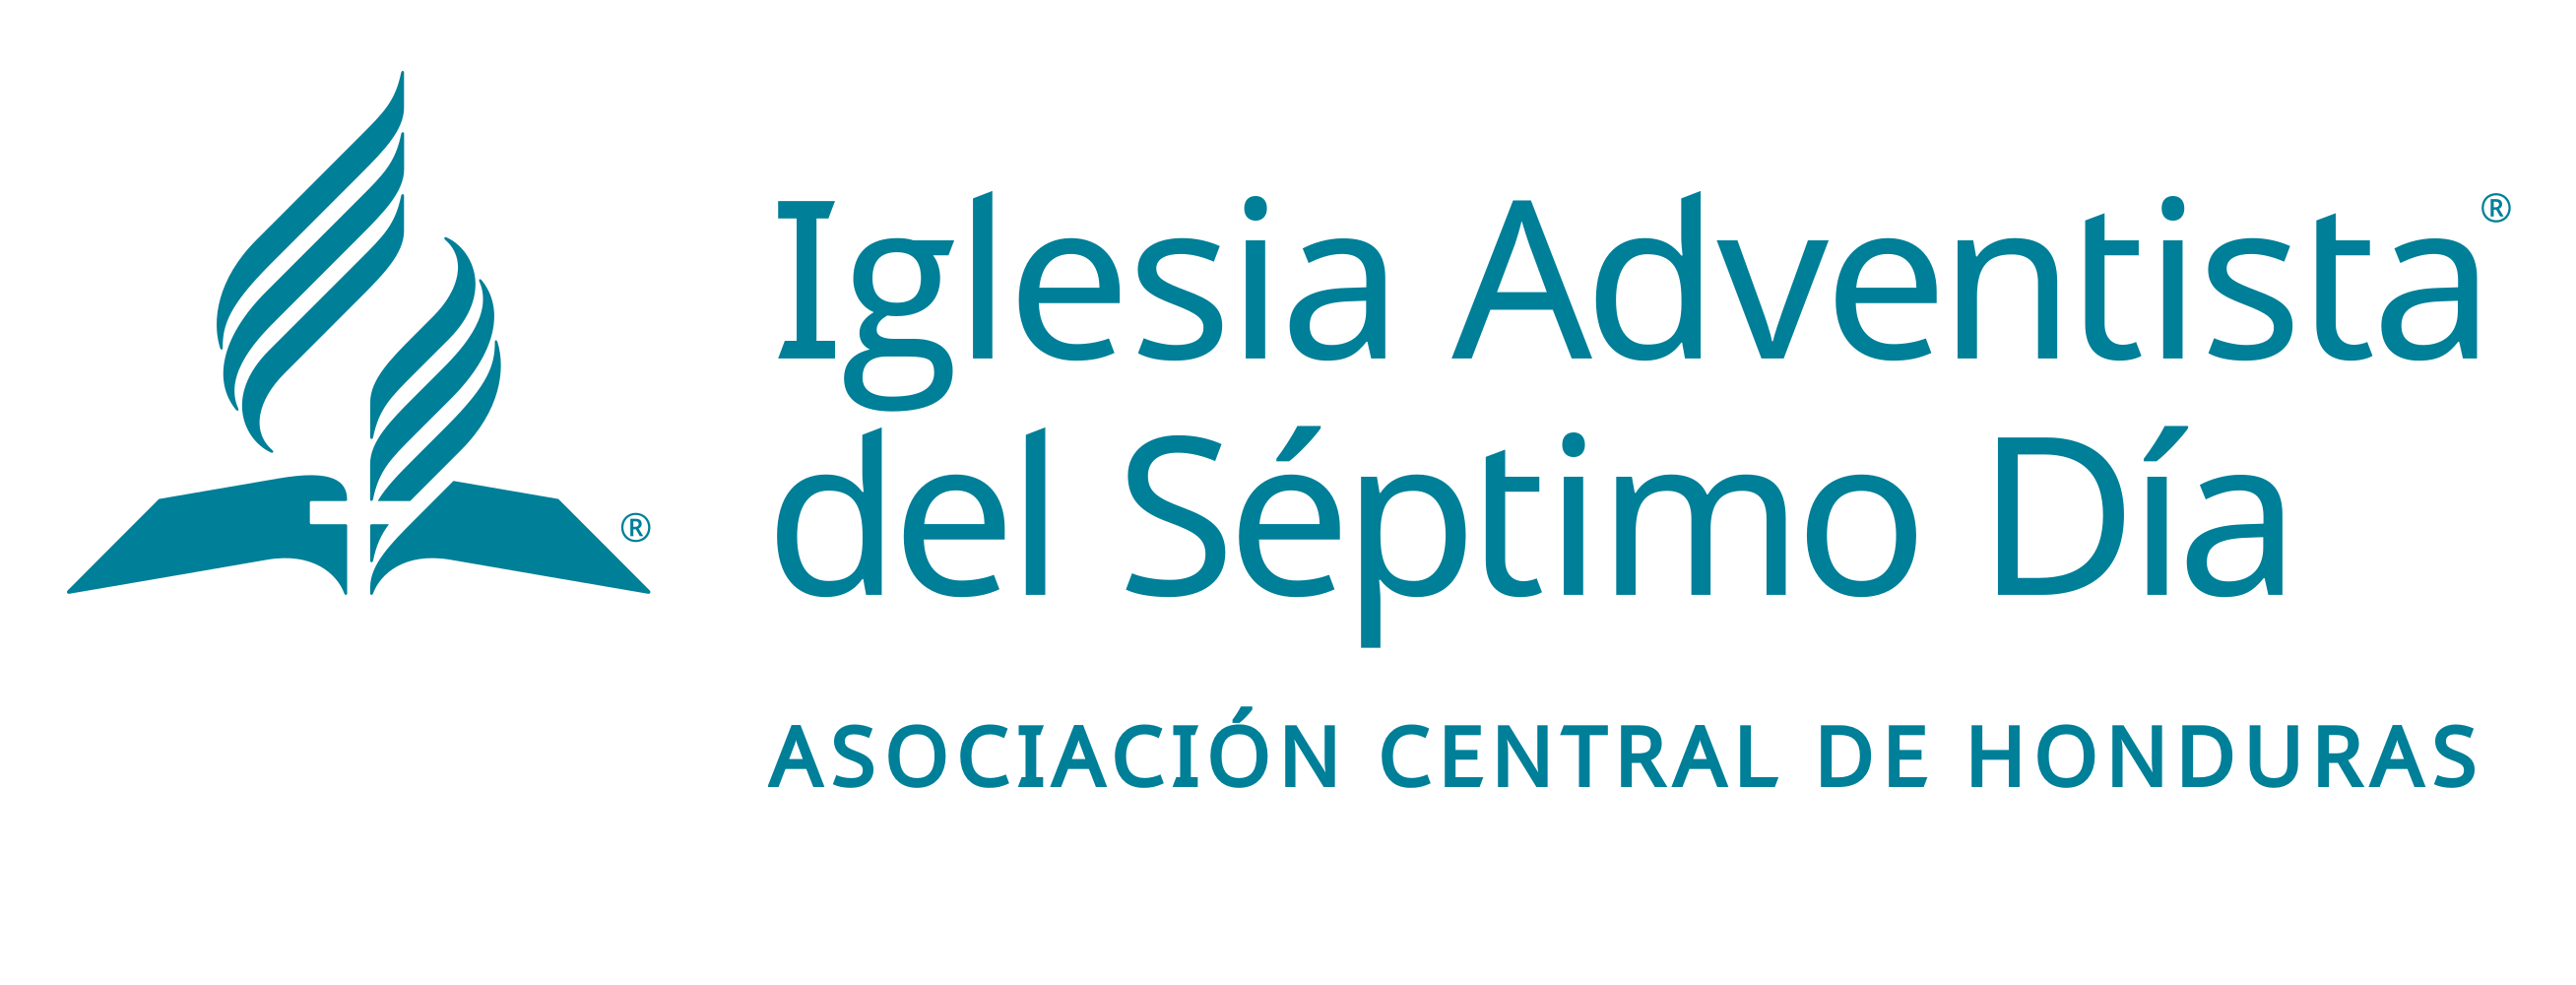 Bienvenidos - Asociación Central de Honduras